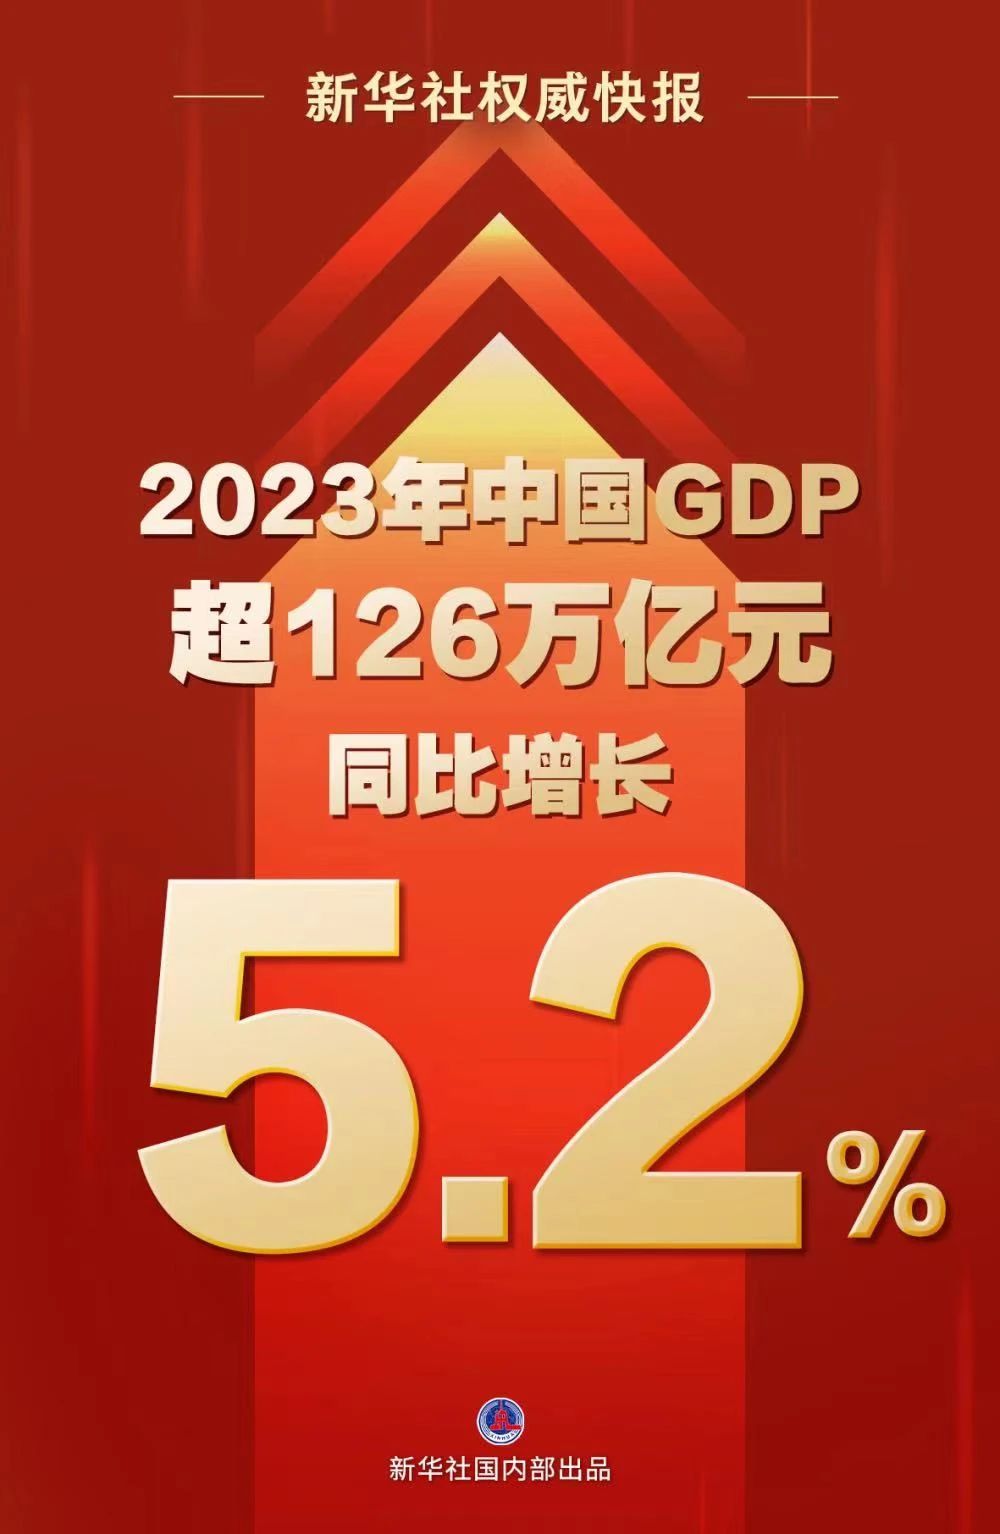 同比增长5.2%！2023年中国GDP超126万亿元